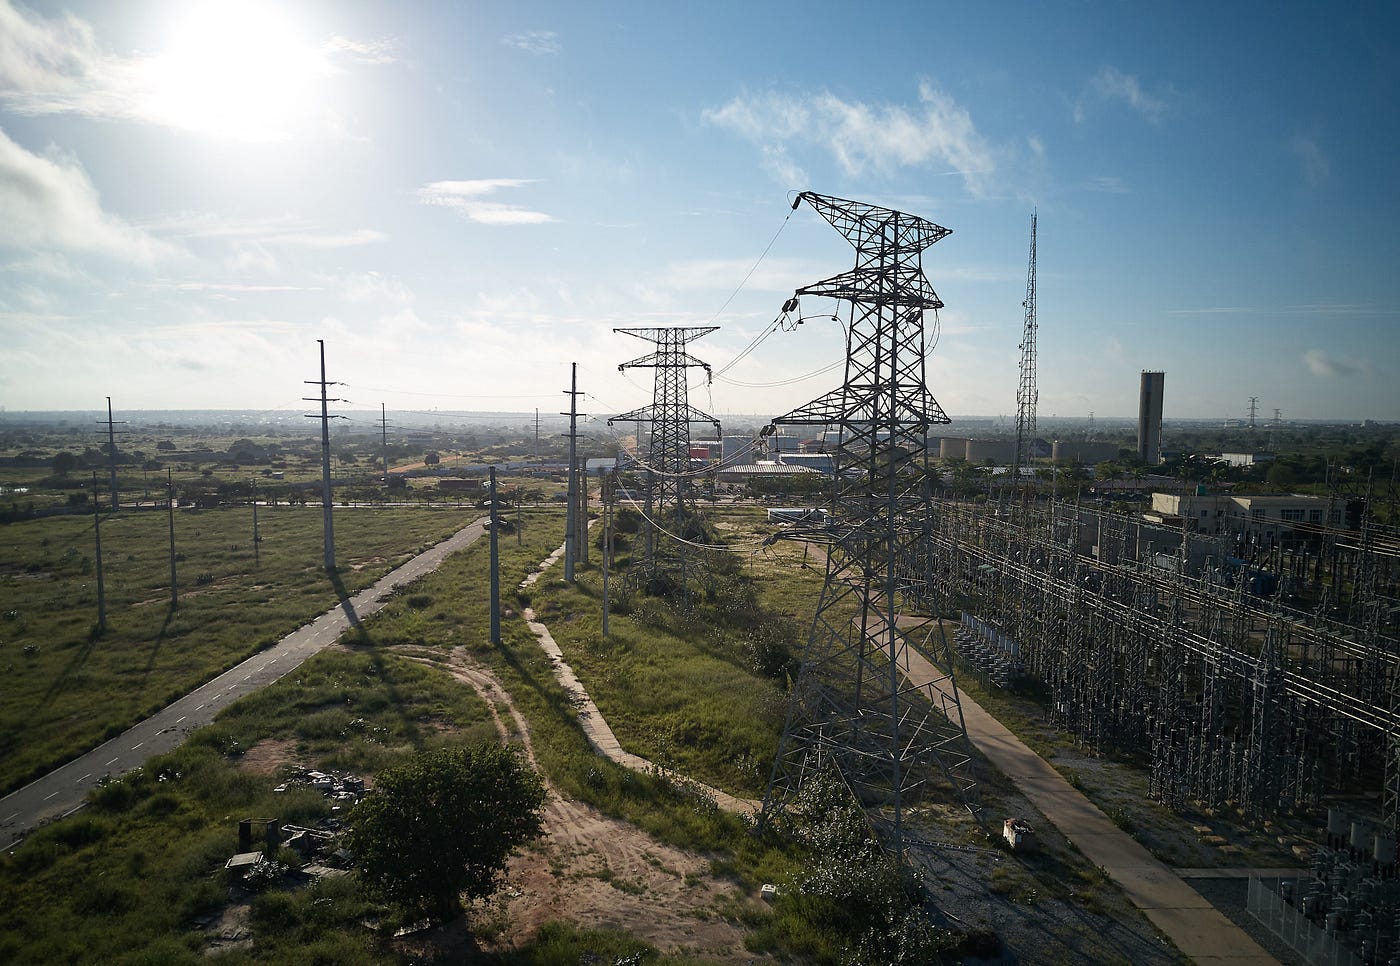 Power Africa assiste a RNT a gerir a construção de uma linha de transmissão de 343 Km e 400 kV, para ligar as redes Central e Sul de Angola.